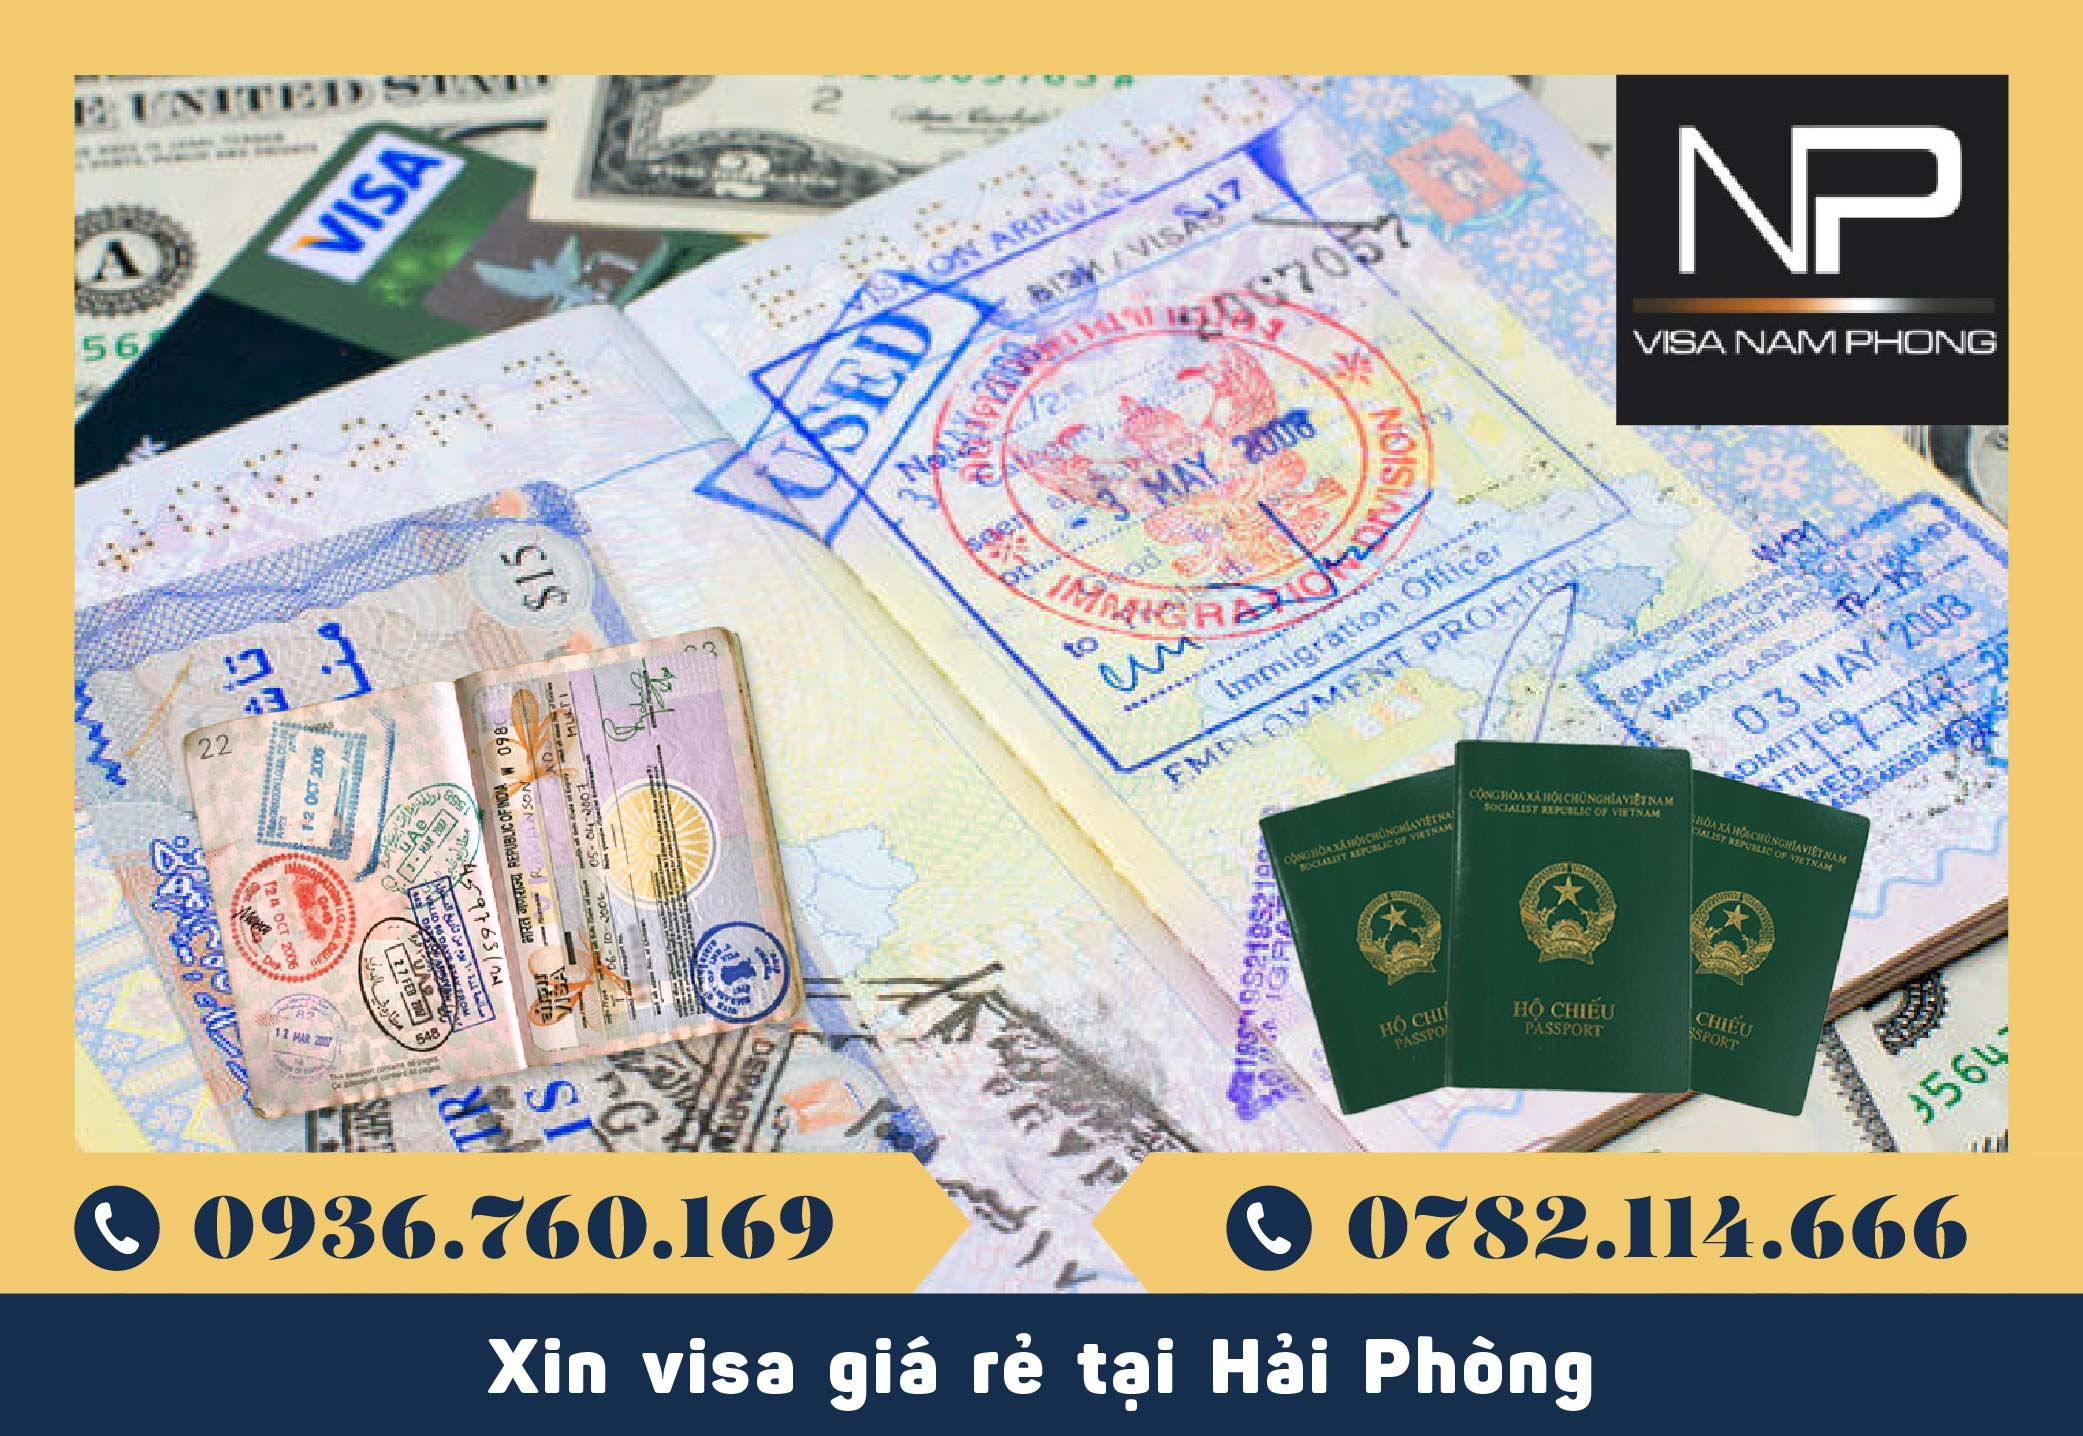 Xin visa giá rẻ tại Hải Phòng